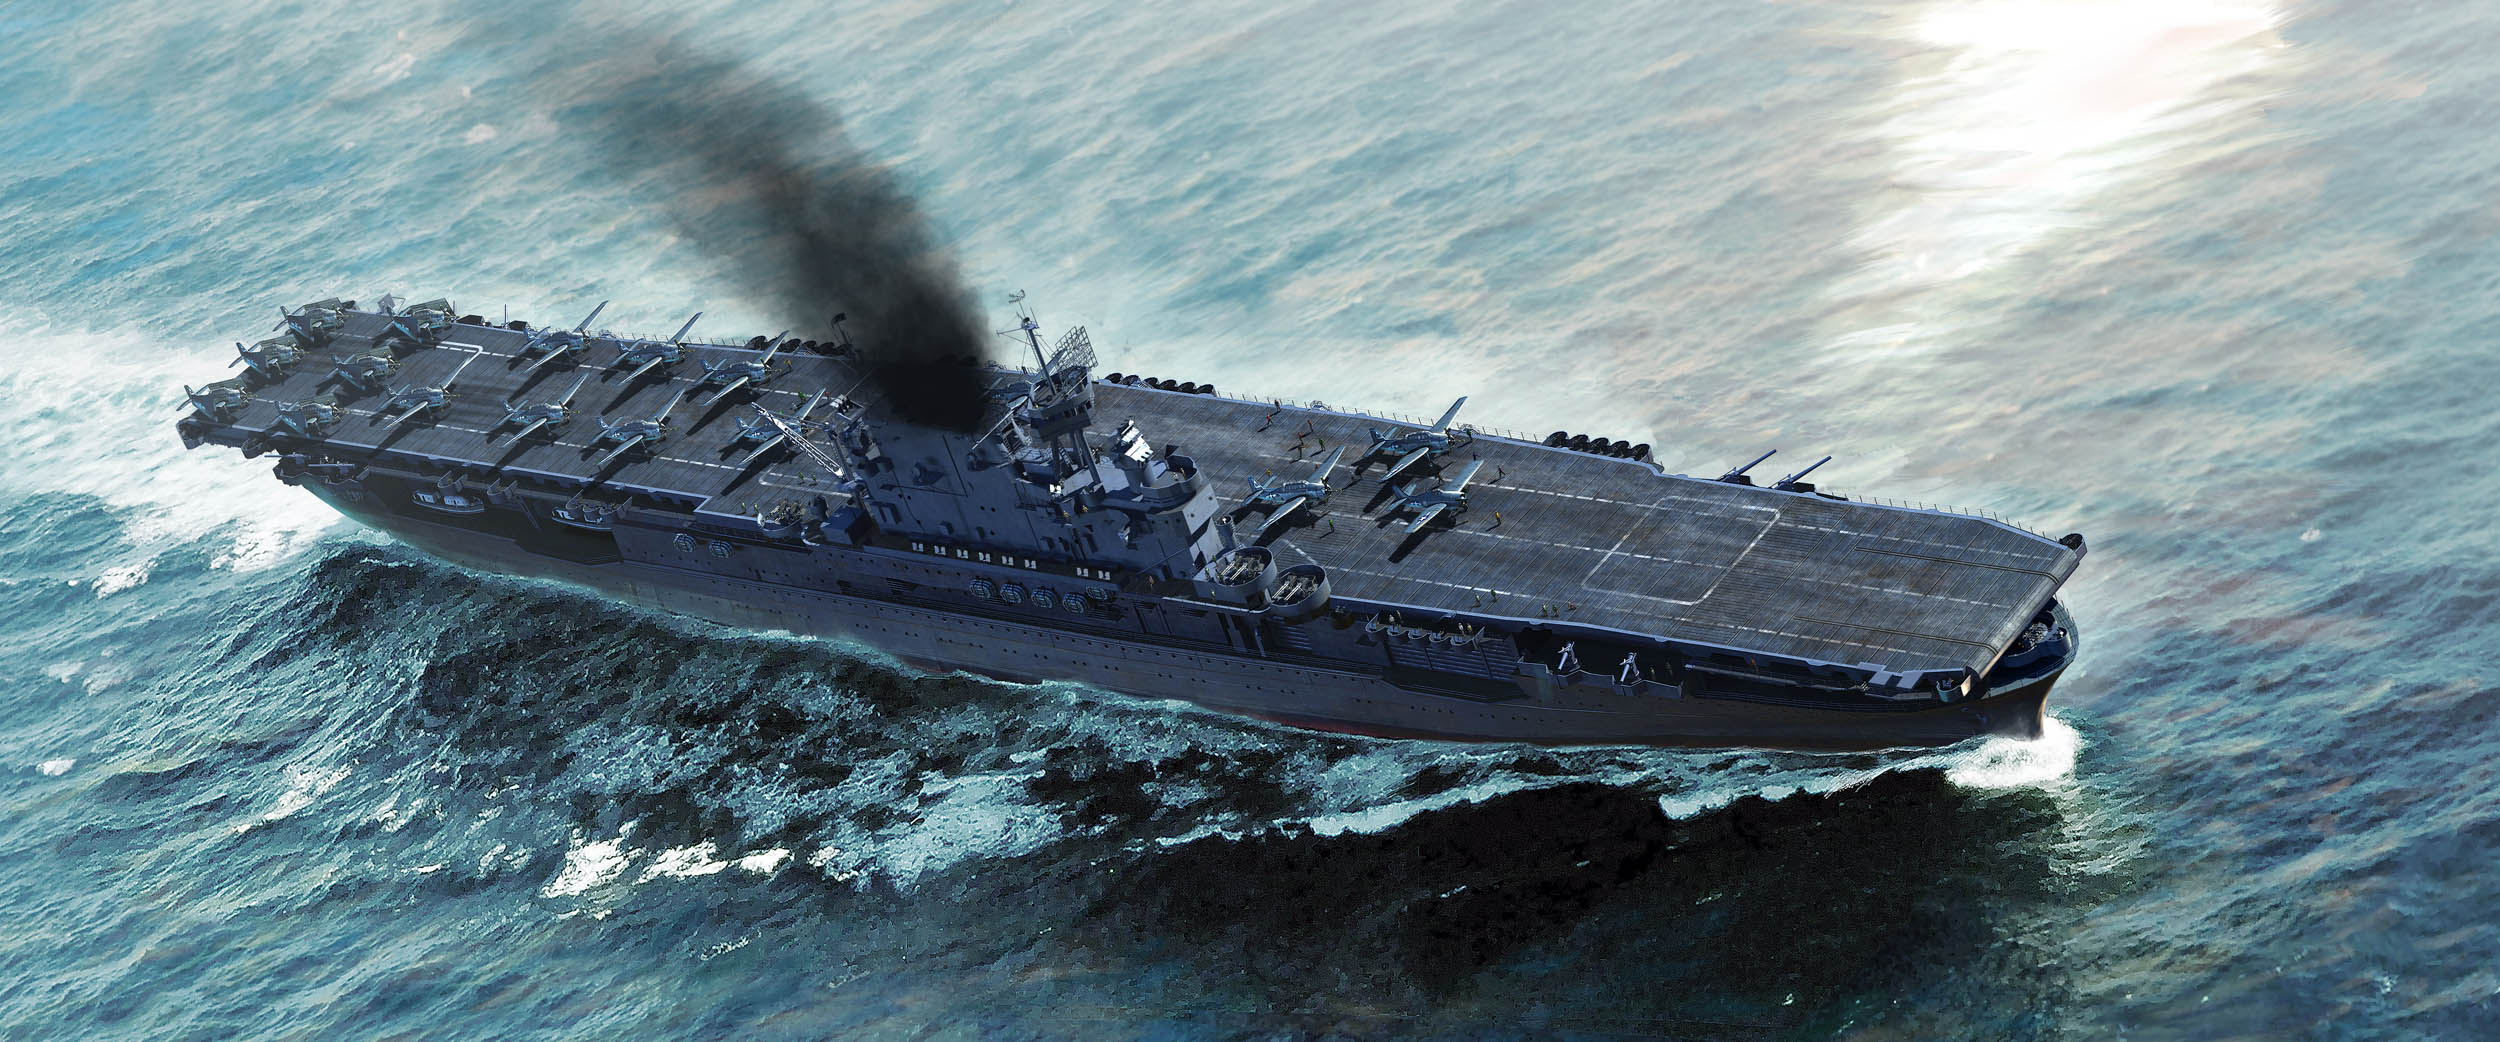 рисунок USS Enterprise CV-6